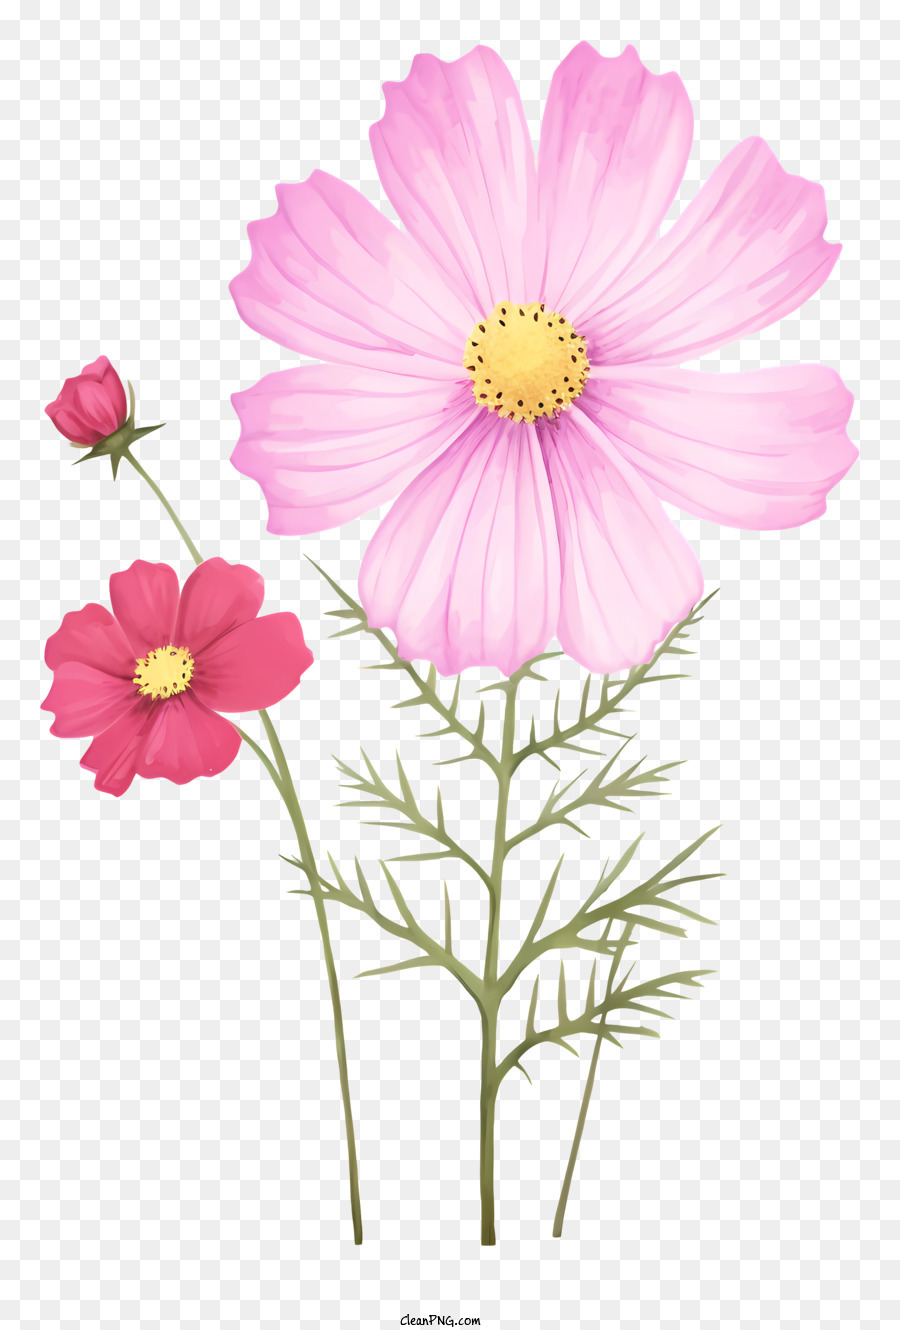 la disposizione dei fiori - Fiori rosa in vaso e sugli steli